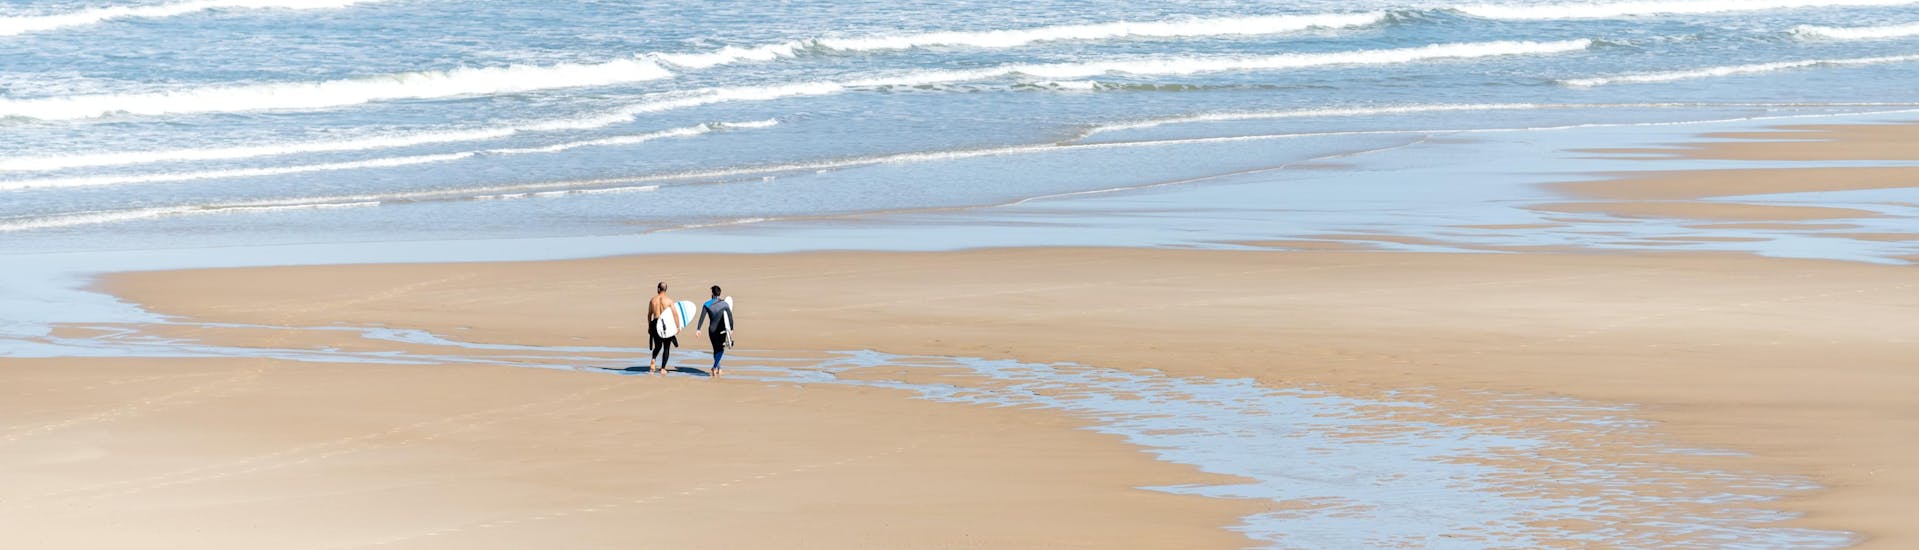 Deux surfeurs marchent le long de la plage dans leurs combinaisons alors qu'ils se préparent à aller surfer en Gironde.